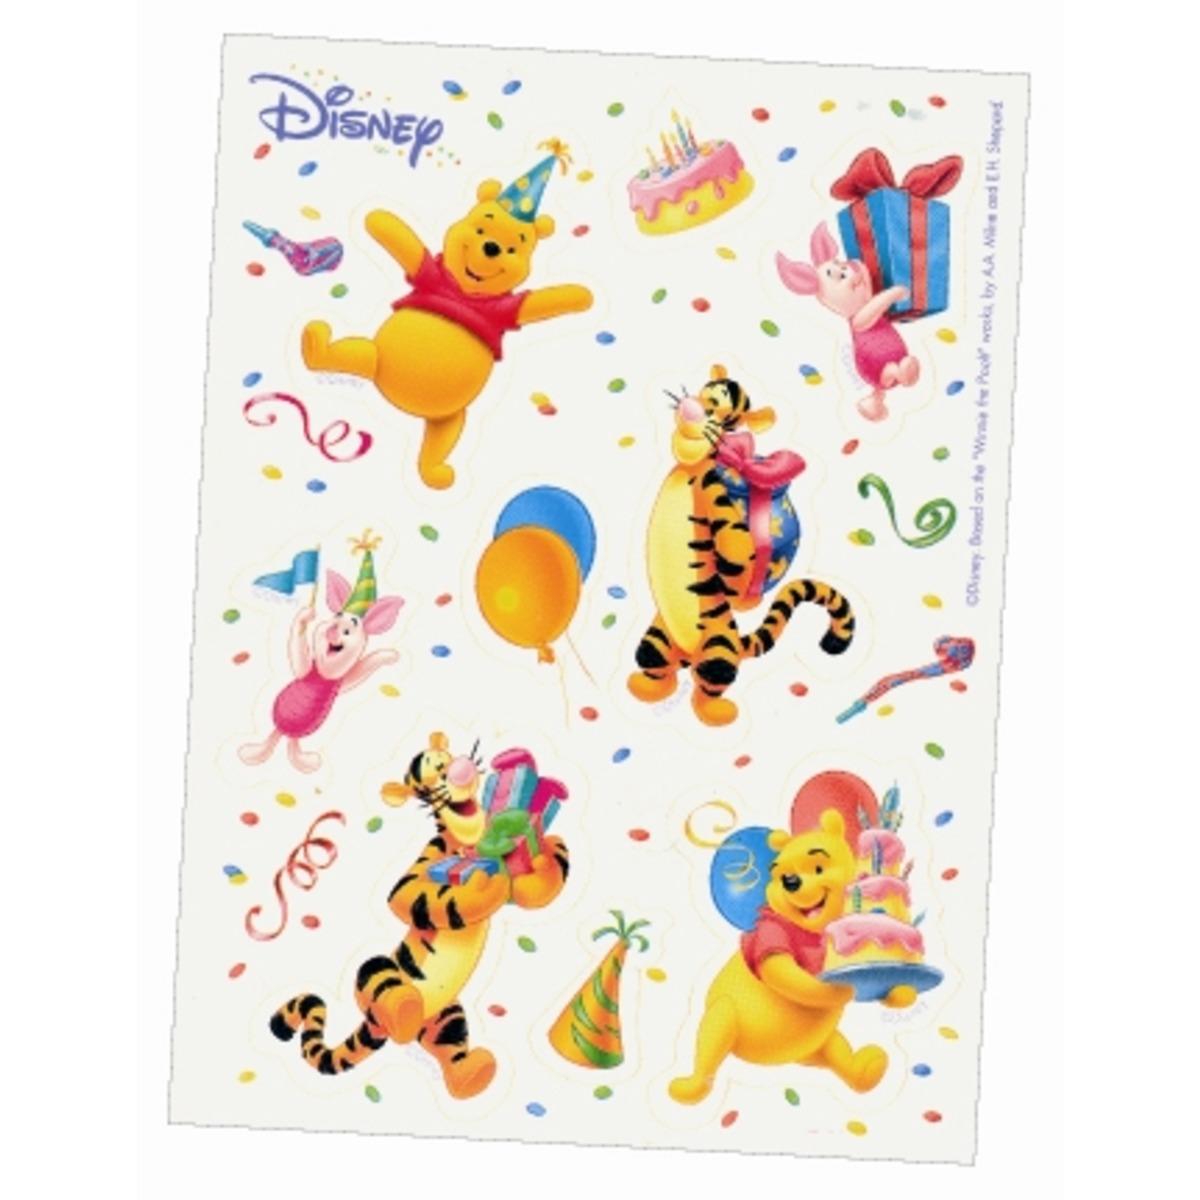 Lot de 6 stickers Winnie en papier adhésif - 6 planches de stickers - Multicolore